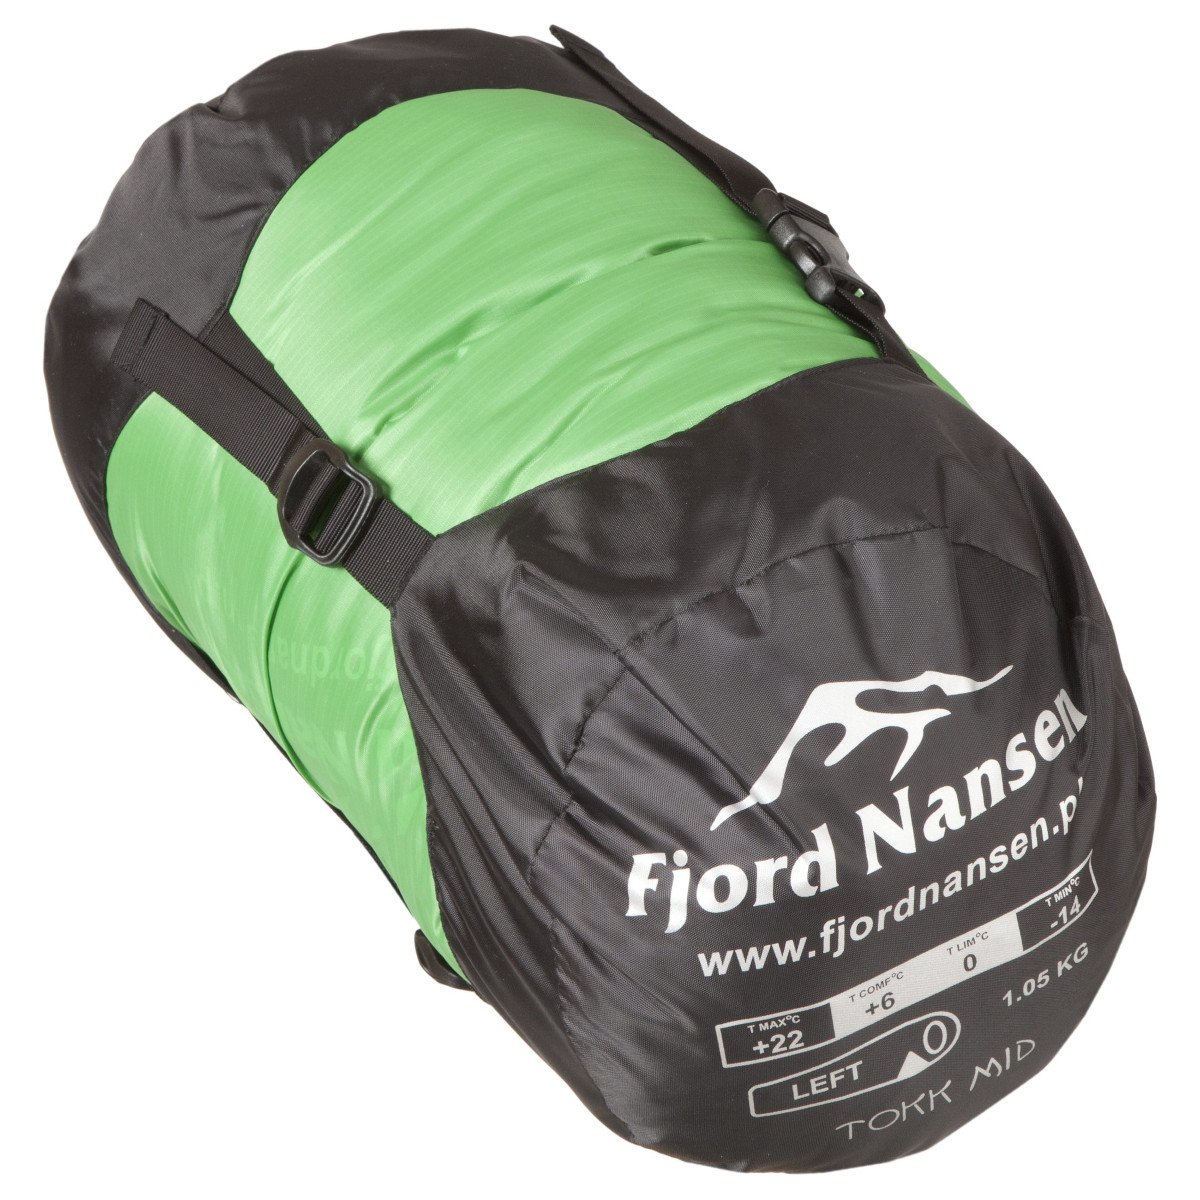 Śpiwór Fjord Nansen Tokk XL 1250 g - lewy